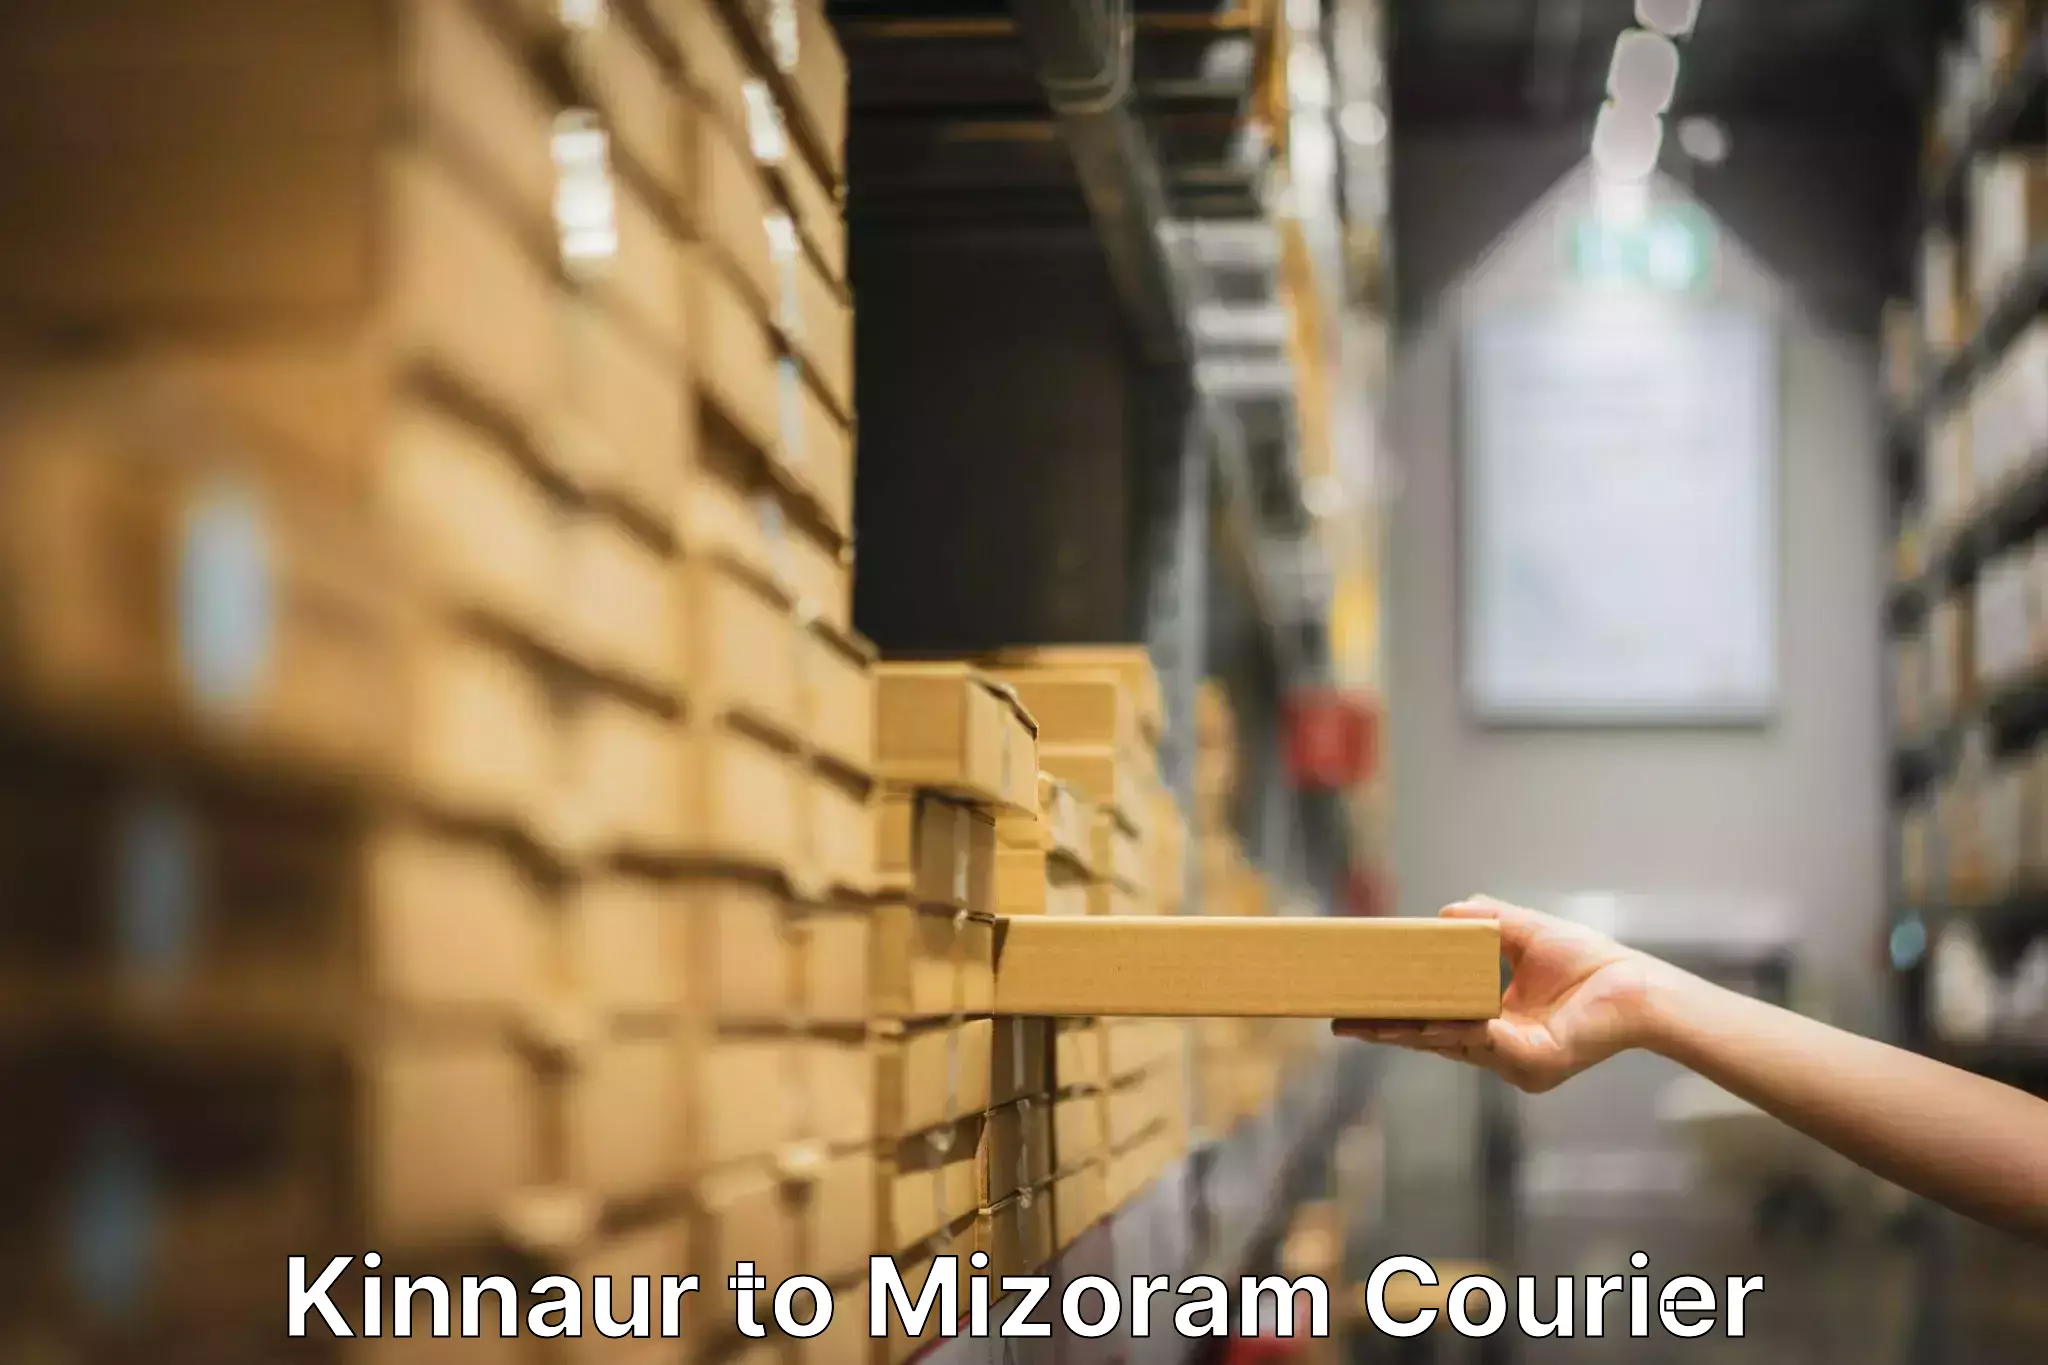 Furniture logistics in Kinnaur to Mizoram